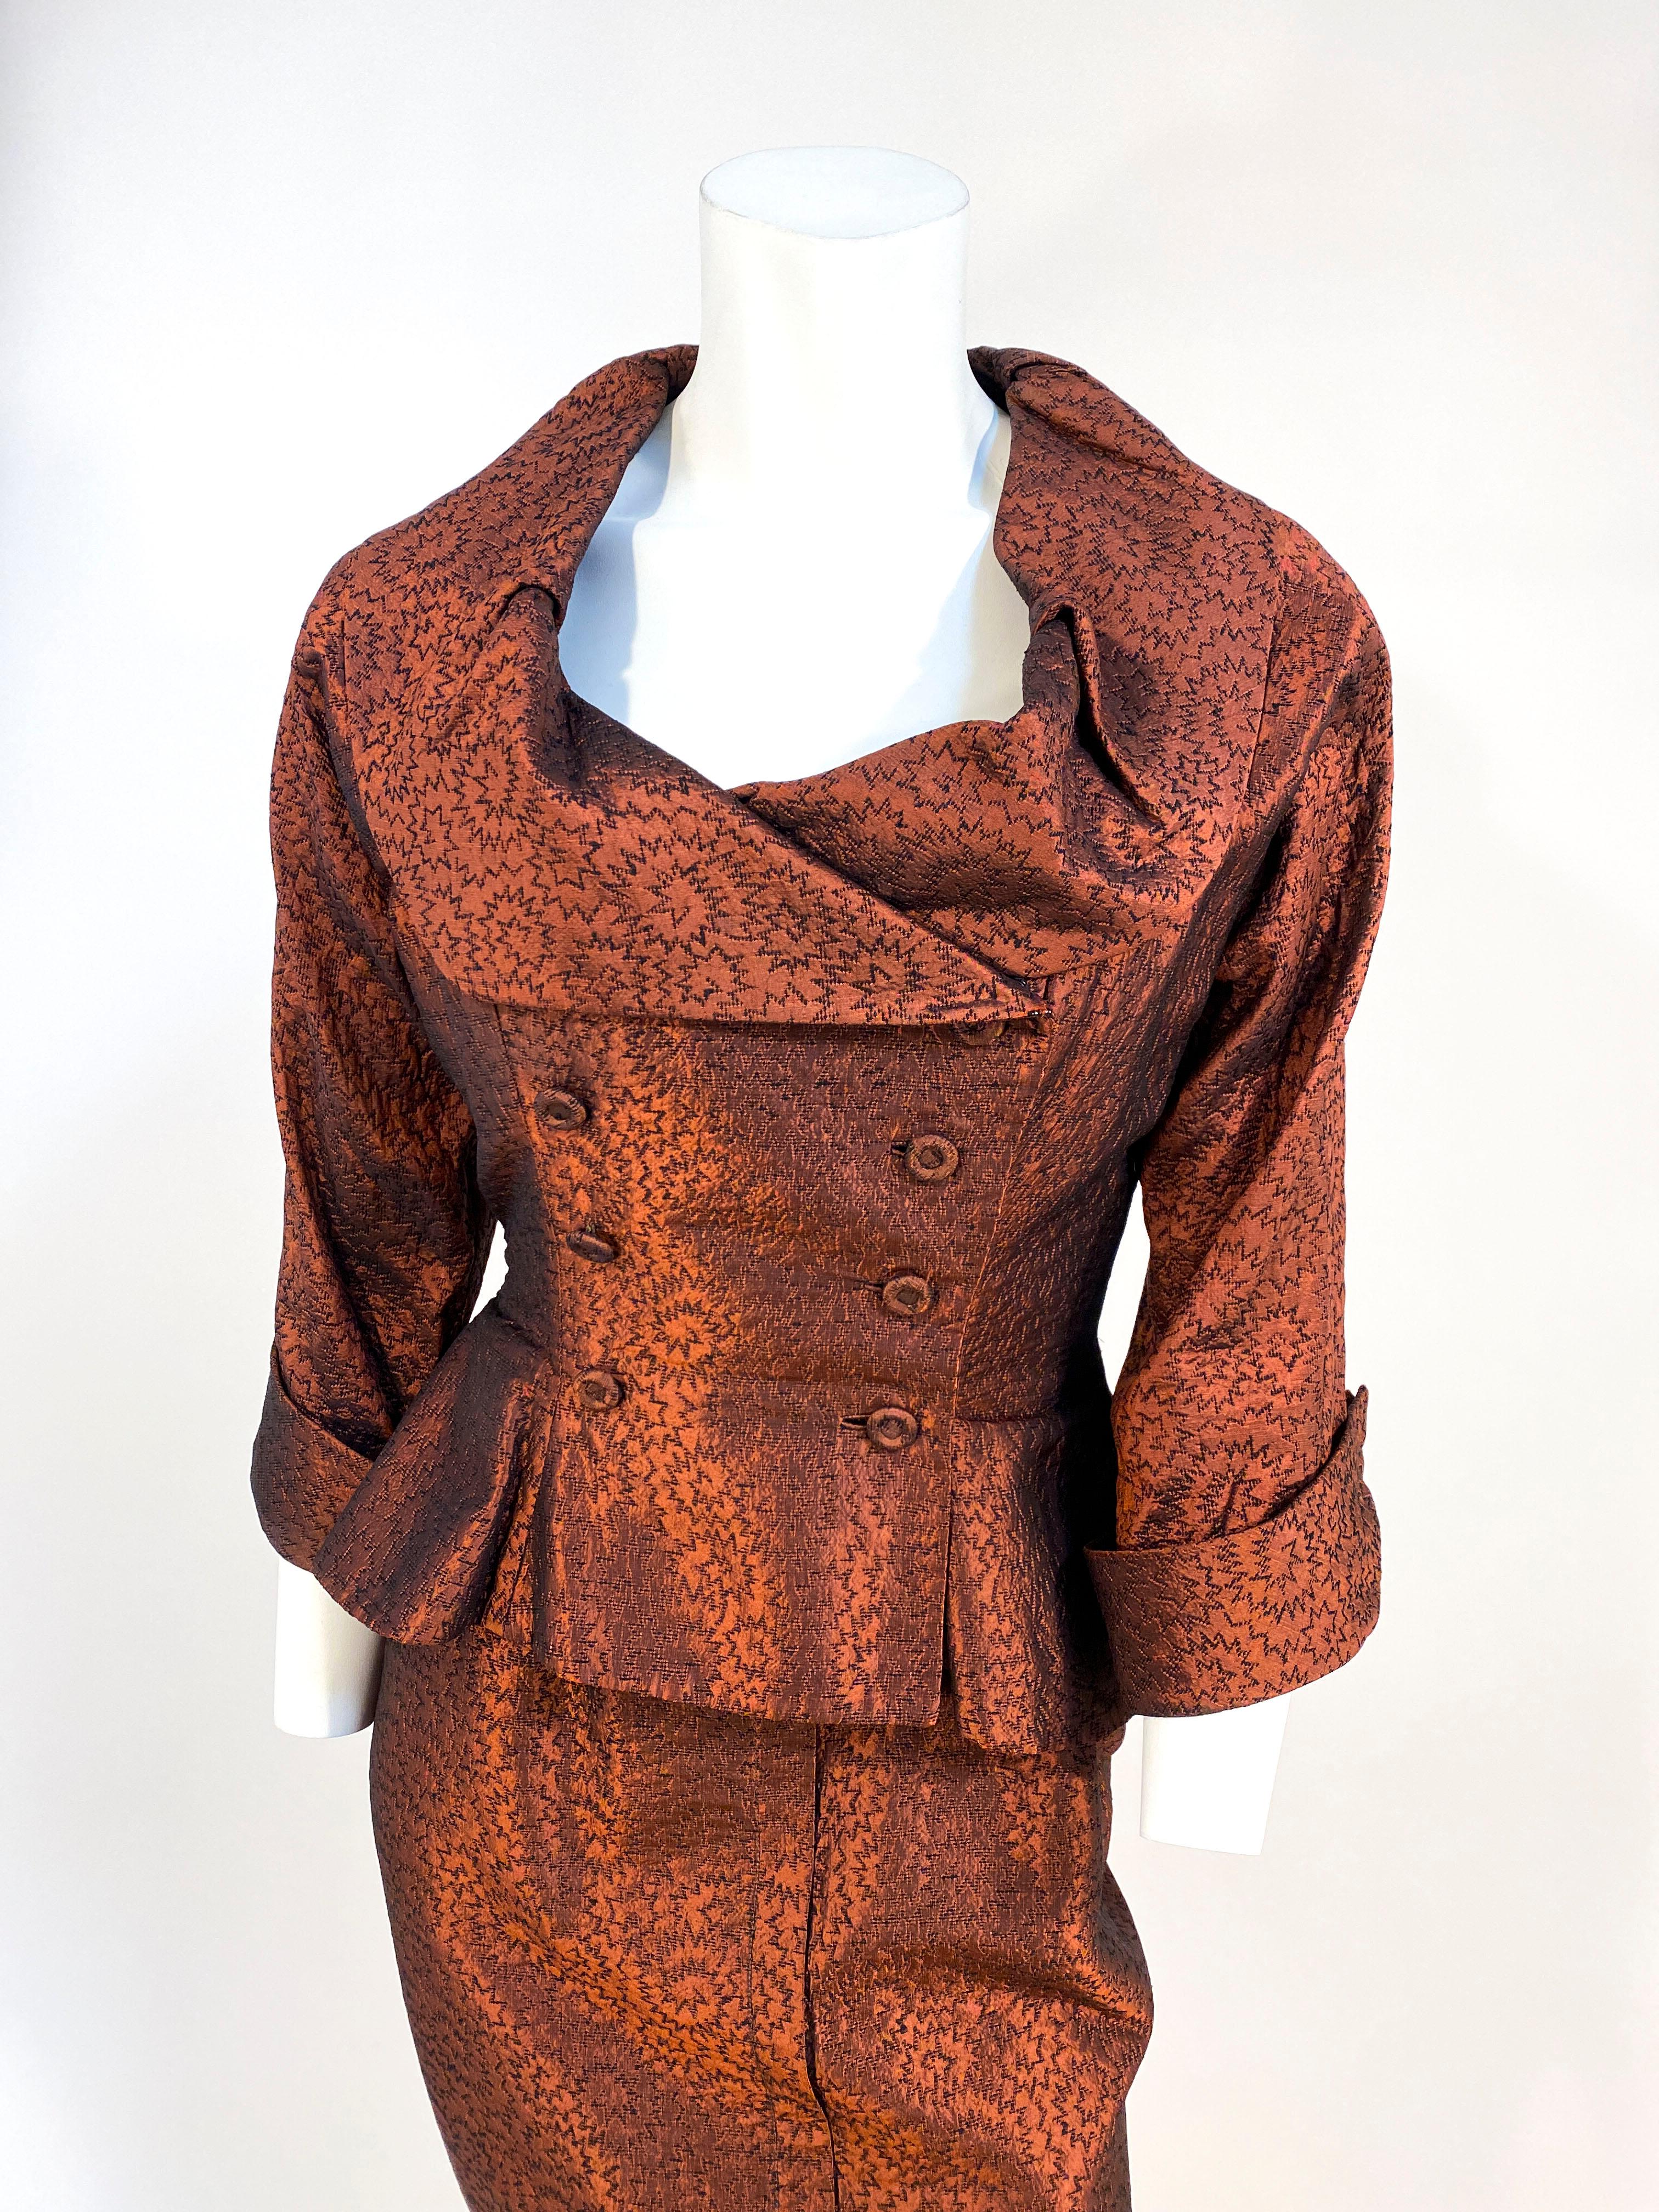 costume de cocktail Ceil Chapman des années 1950, couleur rouille métallique, en brocart de soie à motifs atomiques. La robe est dotée de bretelles spaghetti, d'un torse ajusté, d'une ligne d'inspiration, d'une fermeture à glissière métallique sur